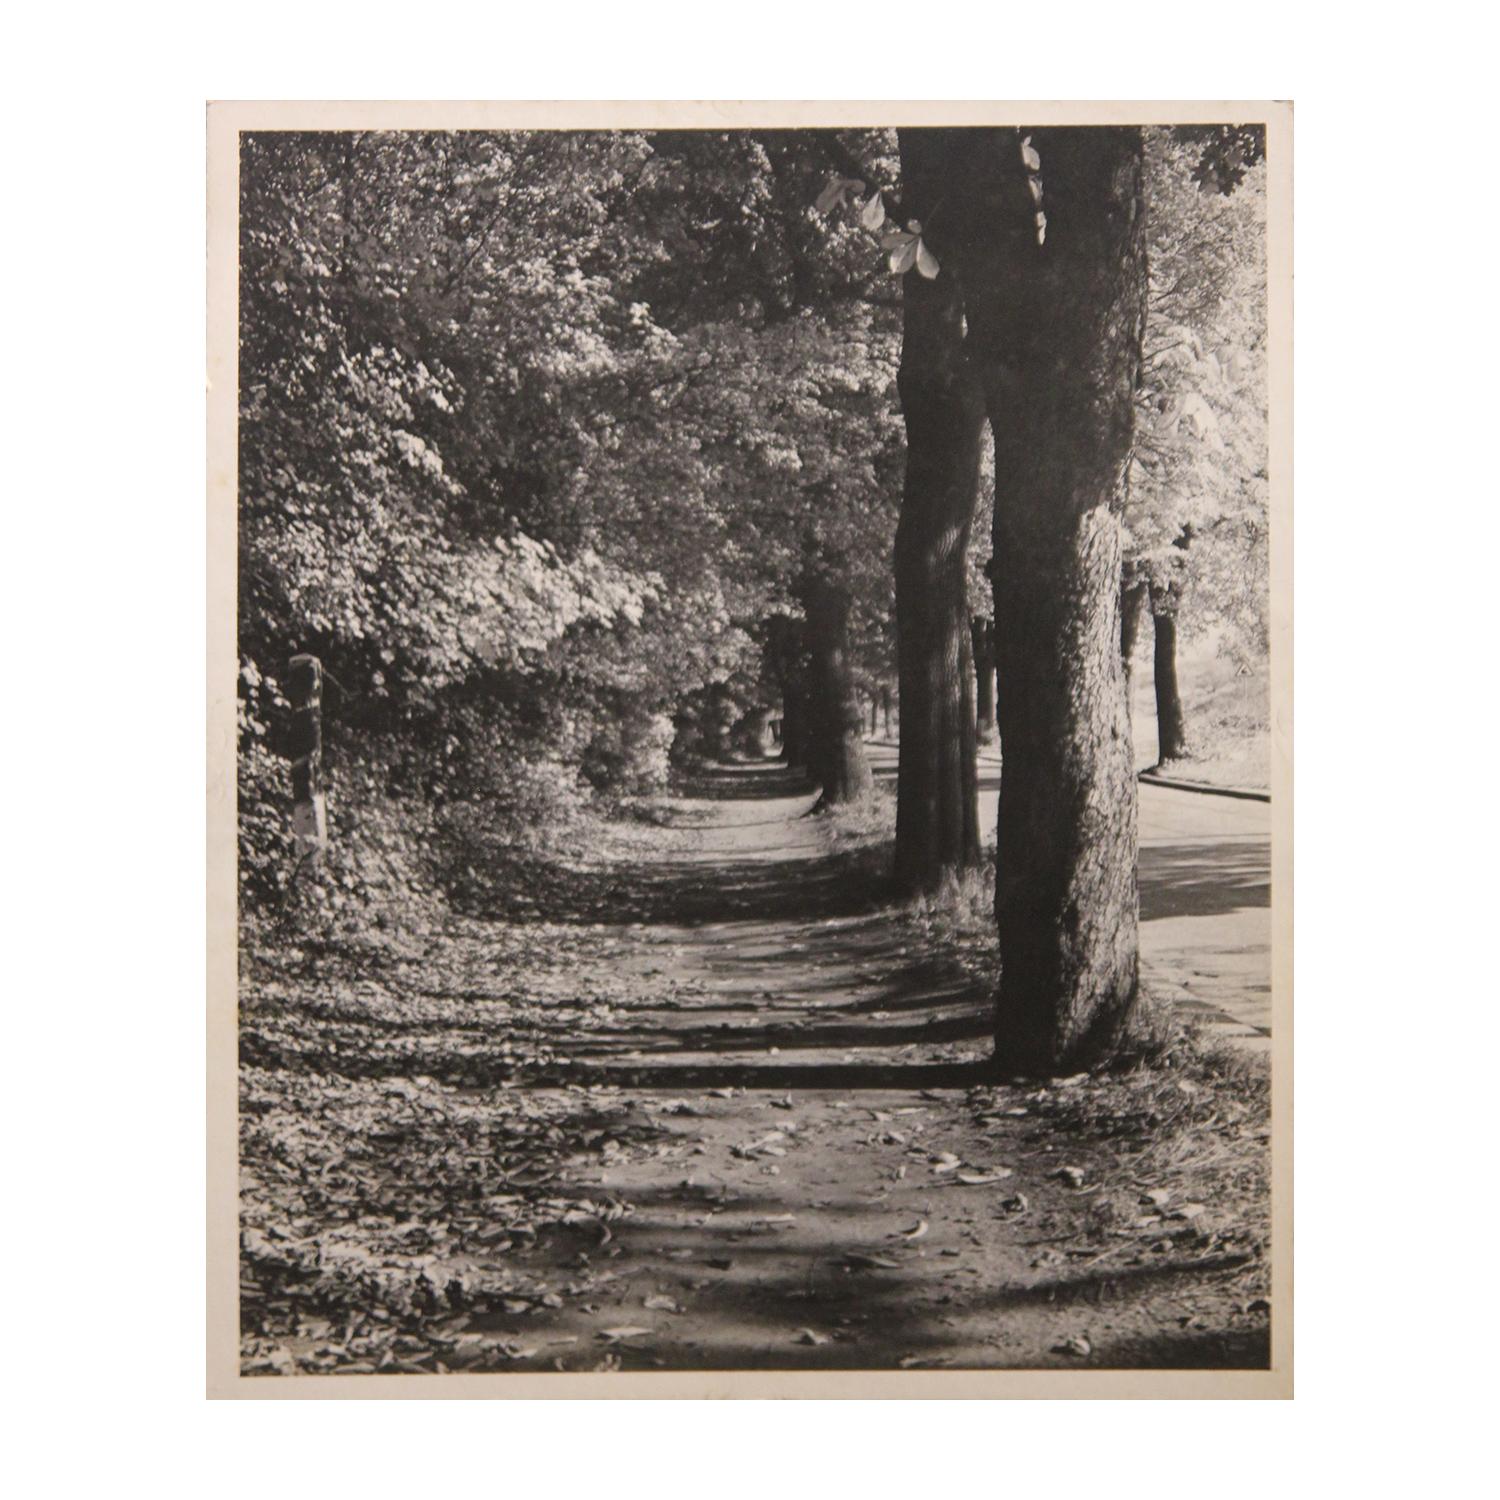 Photographie perspective en noir et blanc d'un trottoir avec arbres